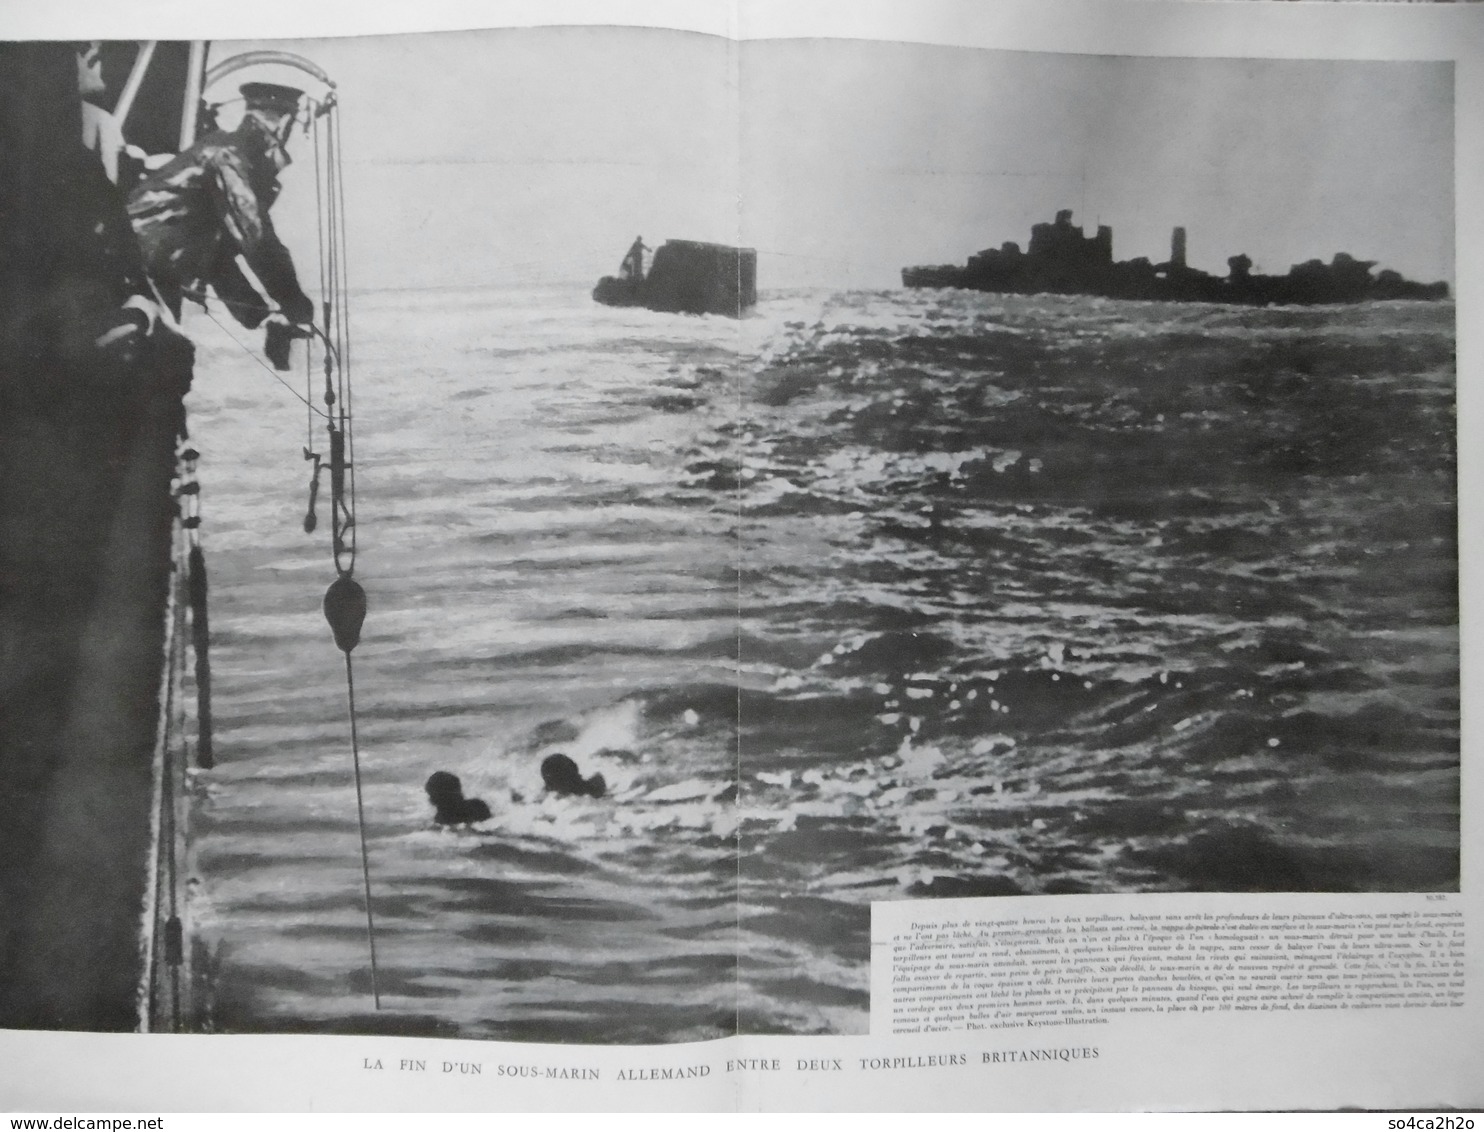 L'Illustration N° 5051 Du 23 Décembre 1939 Un Désastre Naval Allemand; La Fin Du Graf Spee - L'Illustration